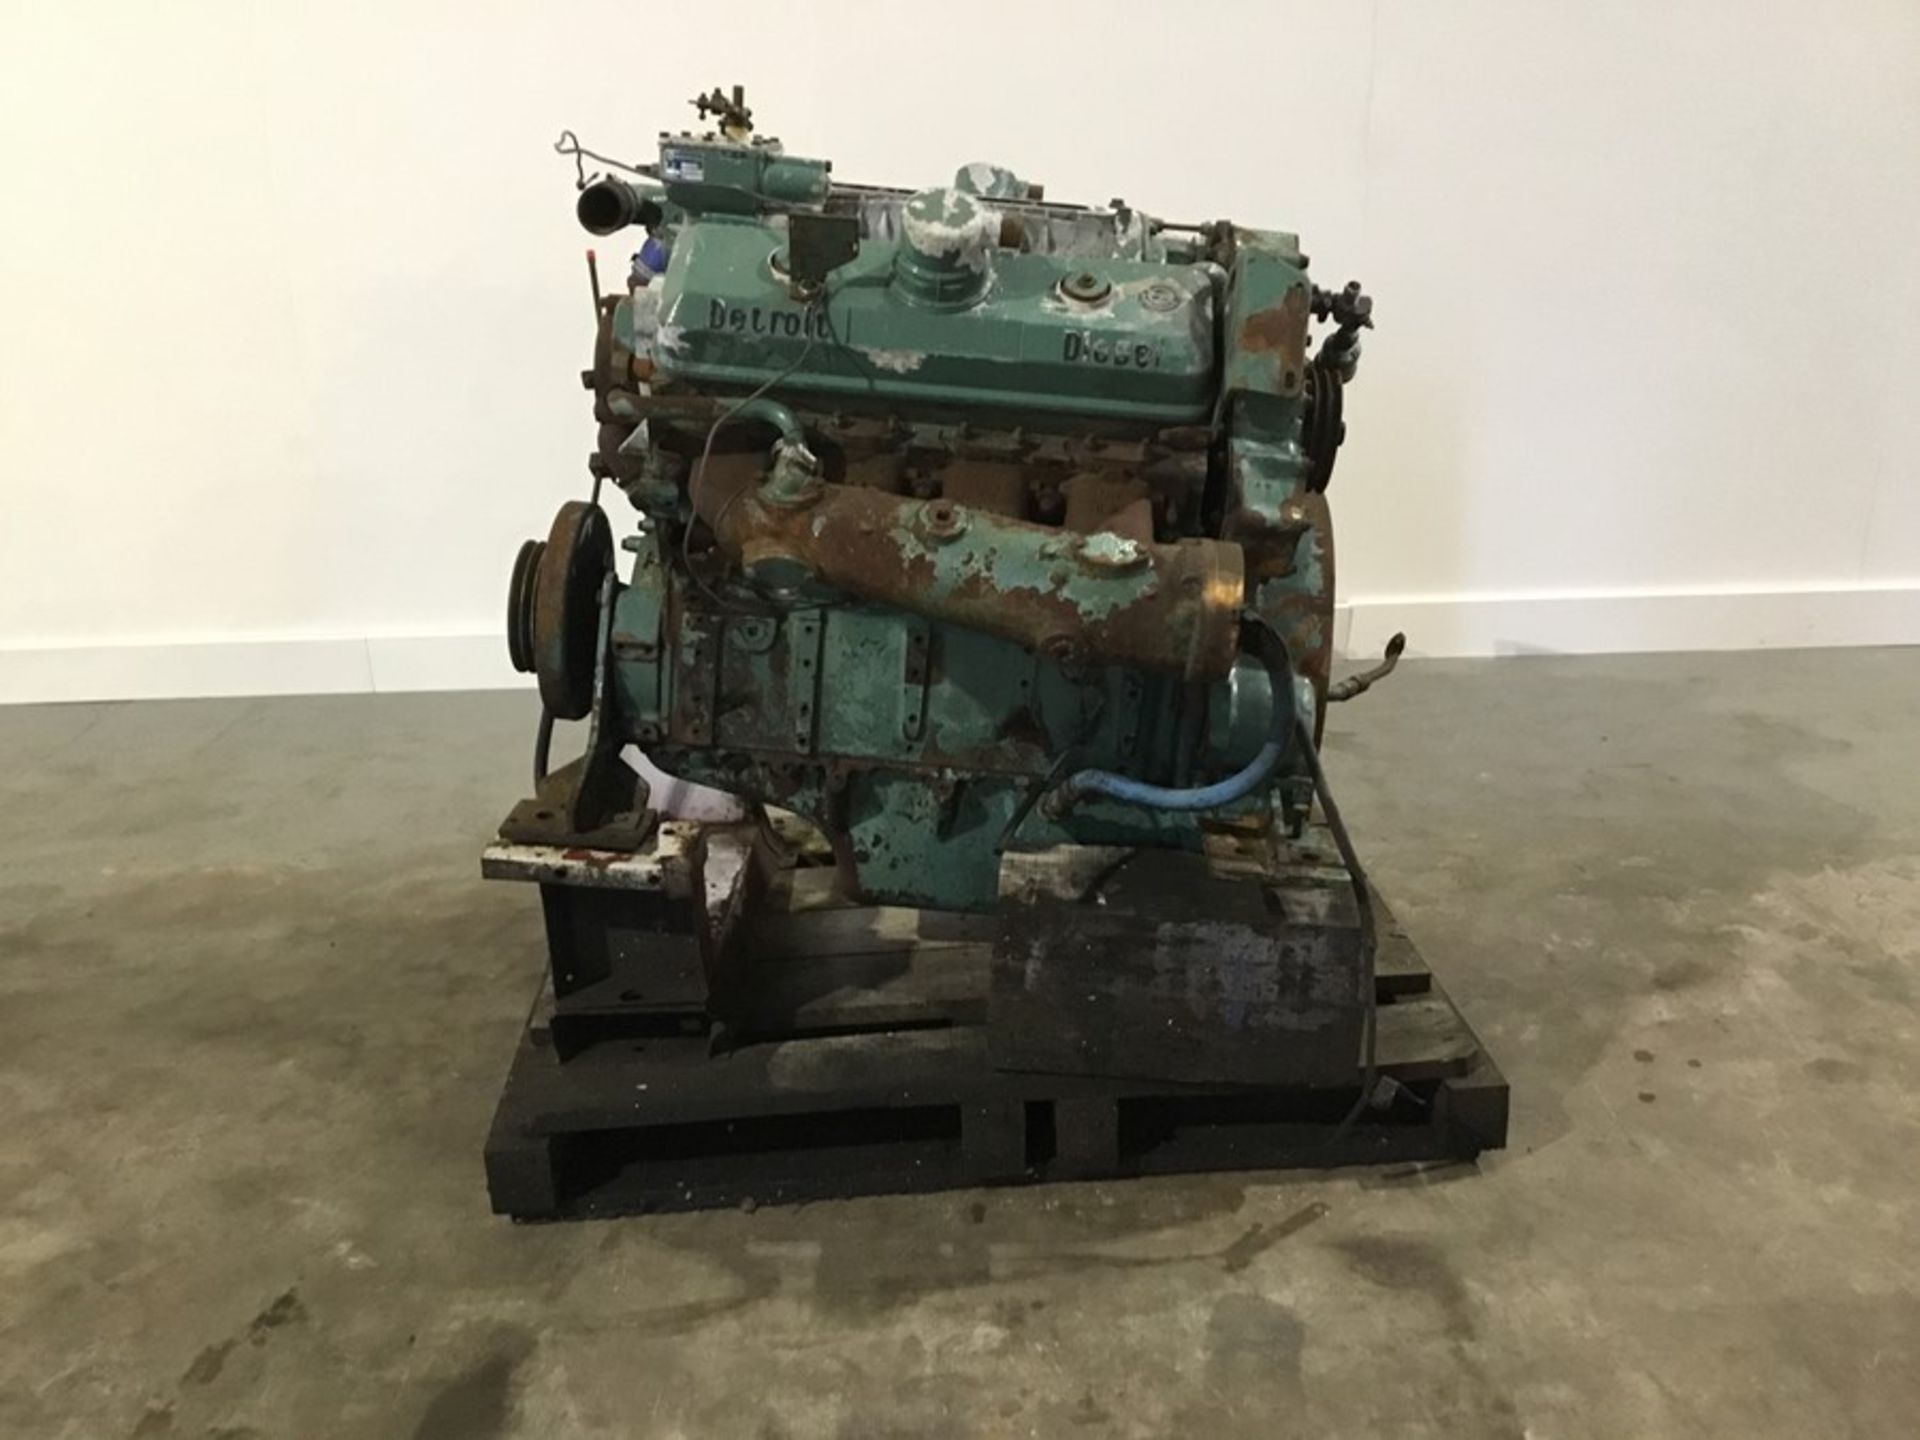 Detroit 8V71 Diesel Engine: Detroit 8v71 v8 Non Turbo Serial Number: 8FW000229*8082-3301 used - Image 13 of 18